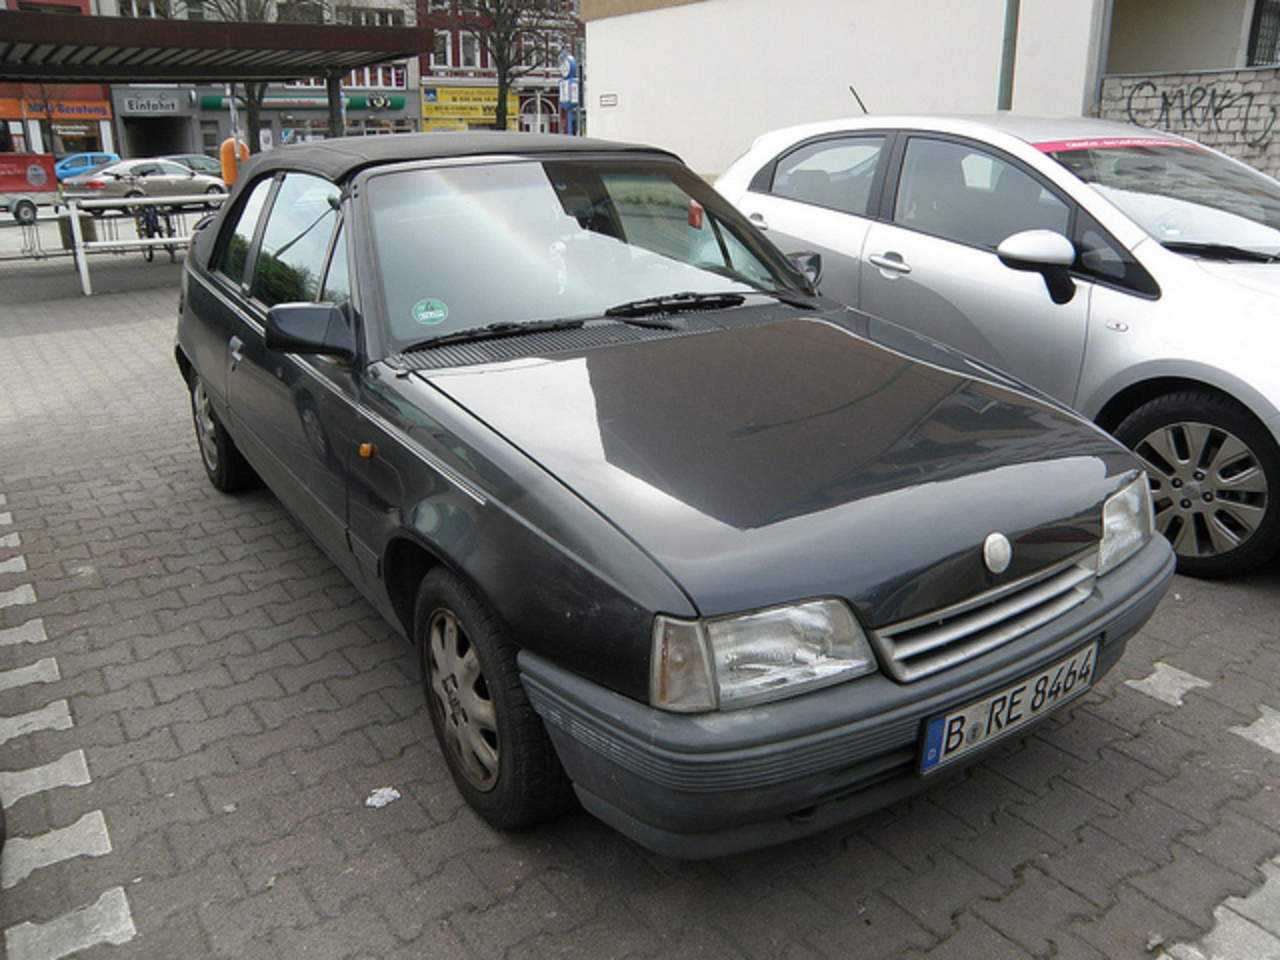 1989 Opel Kadett Cabriolet [E] | Flickr - Photo Sharing!